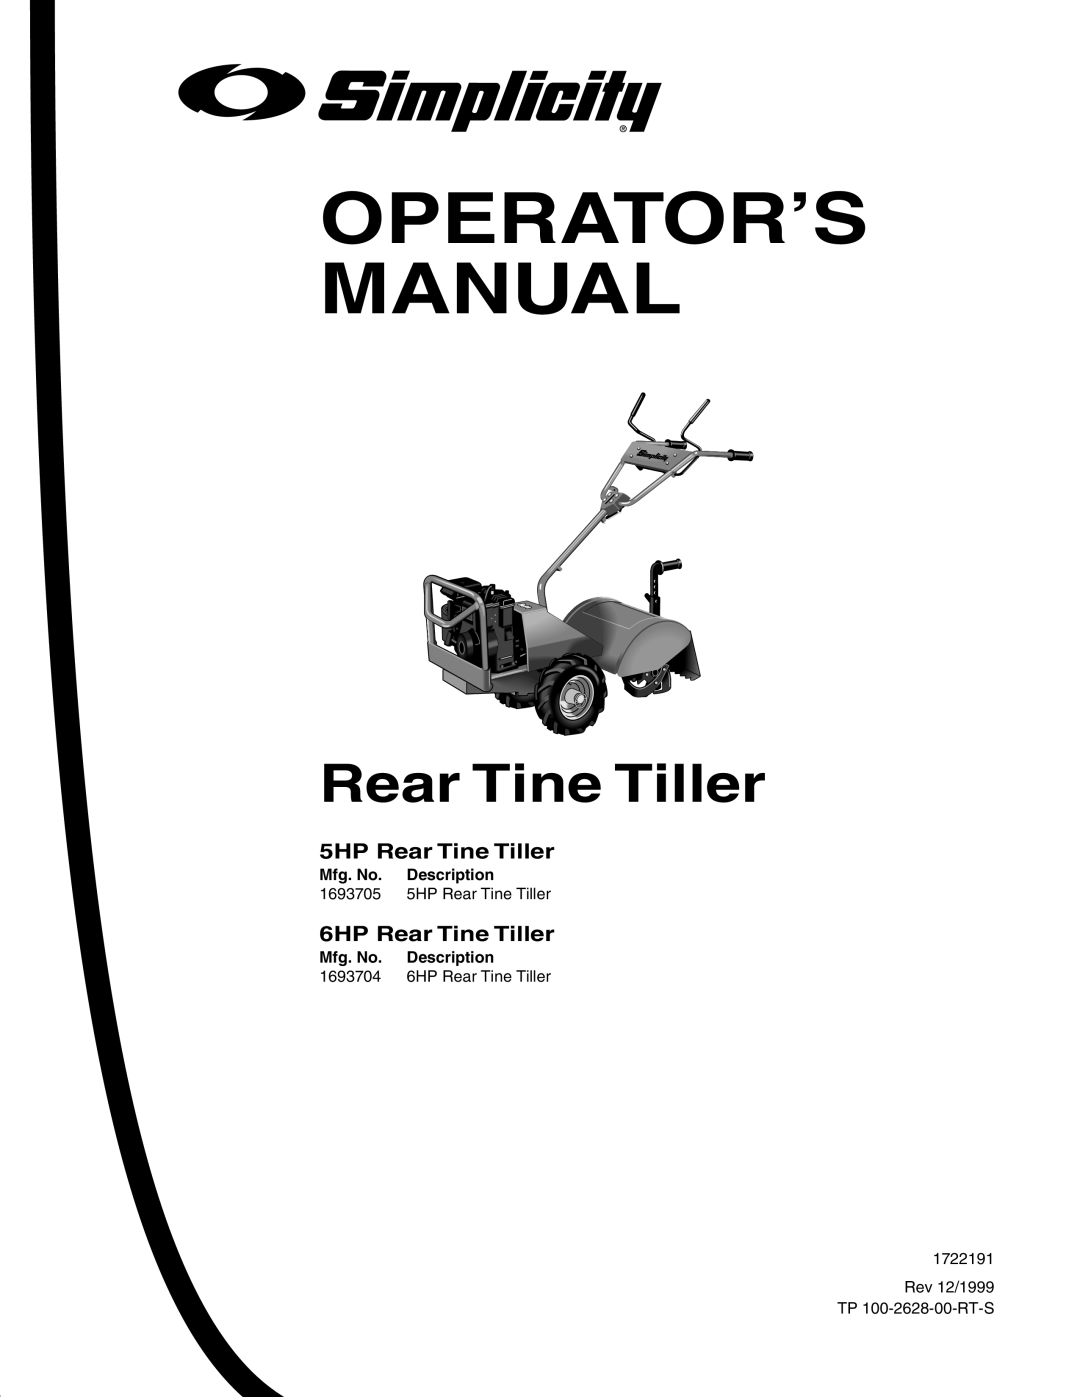 Simplicity 1693705, 1693704, 1693207 manual Operator’S Manual, 5HP Rear Tine Tiller, 6HP Rear Tine Tiller 